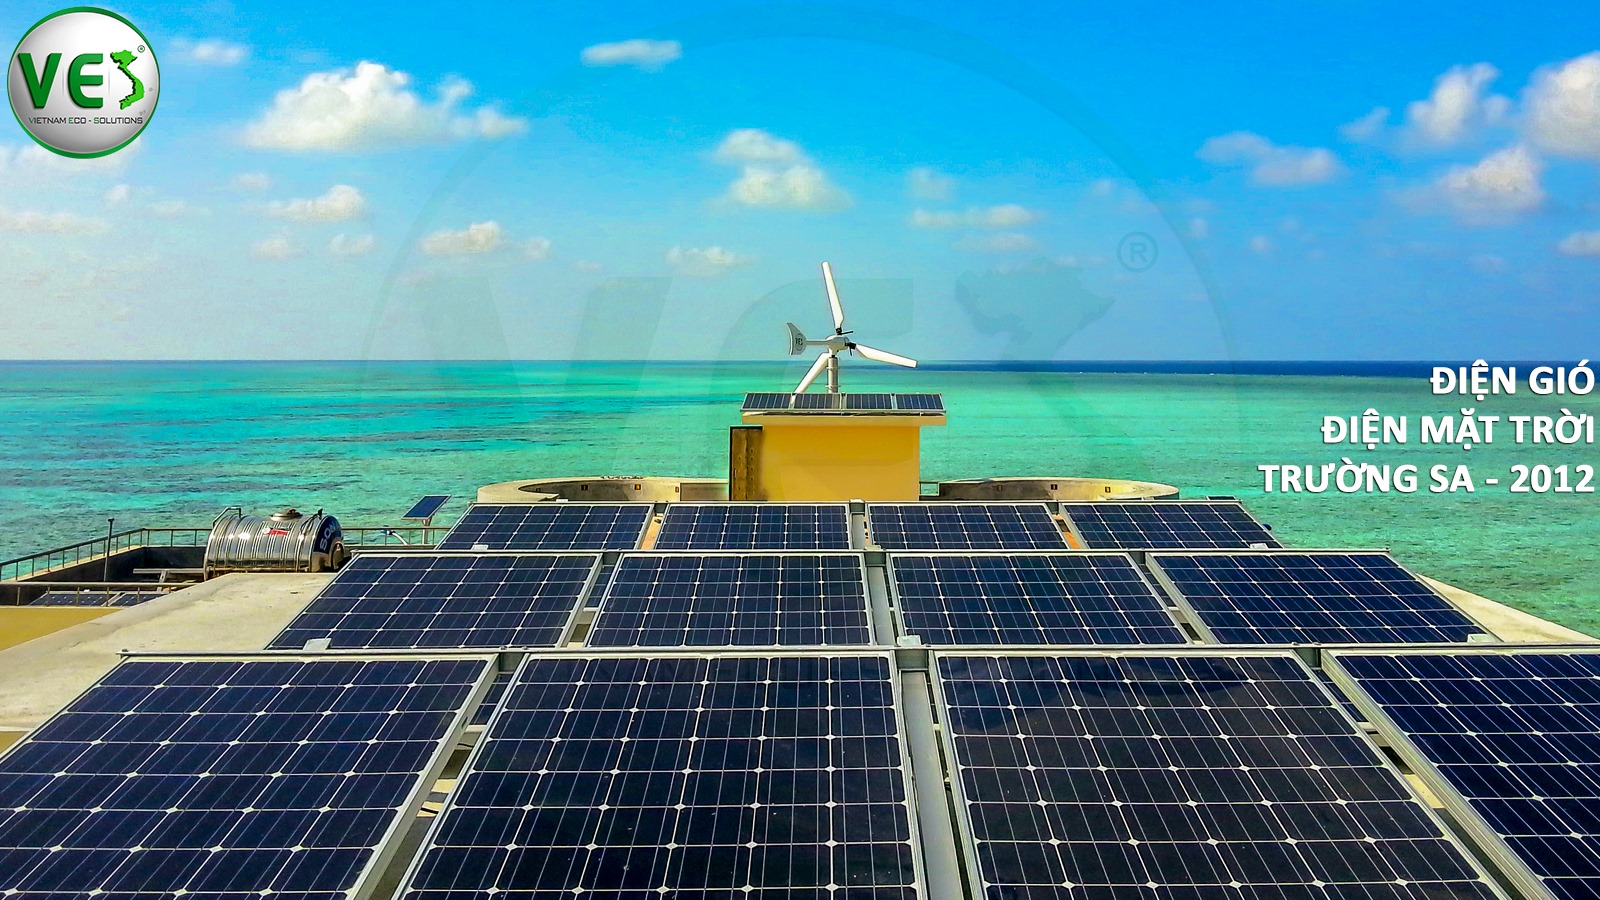 Ves lắp đặt điện năng lượng mặt trời cho khách hàng tại Hải Quân - Trường Sa